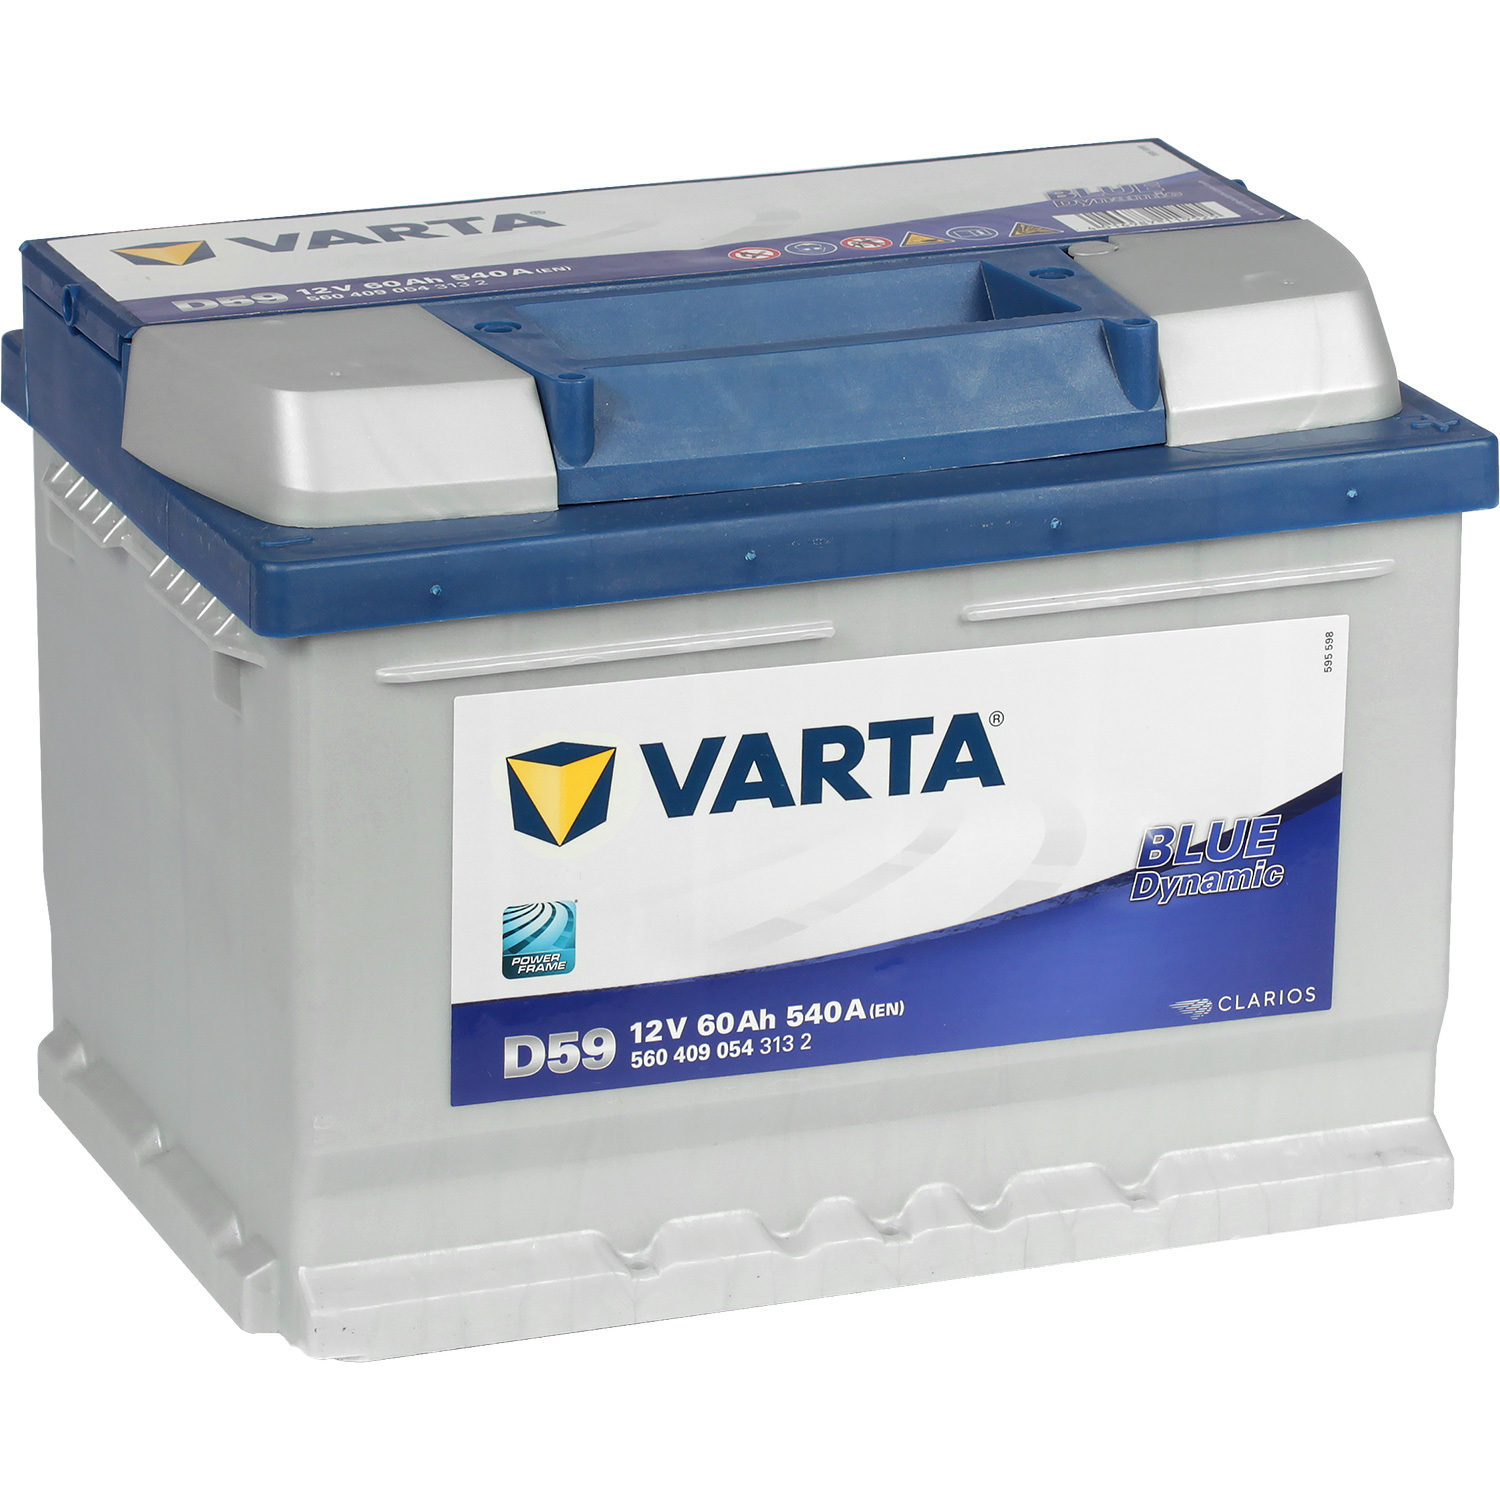 Varta Автомобильный аккумулятор Varta Blue Dynamic D59 60 Ач обратная полярность LB2